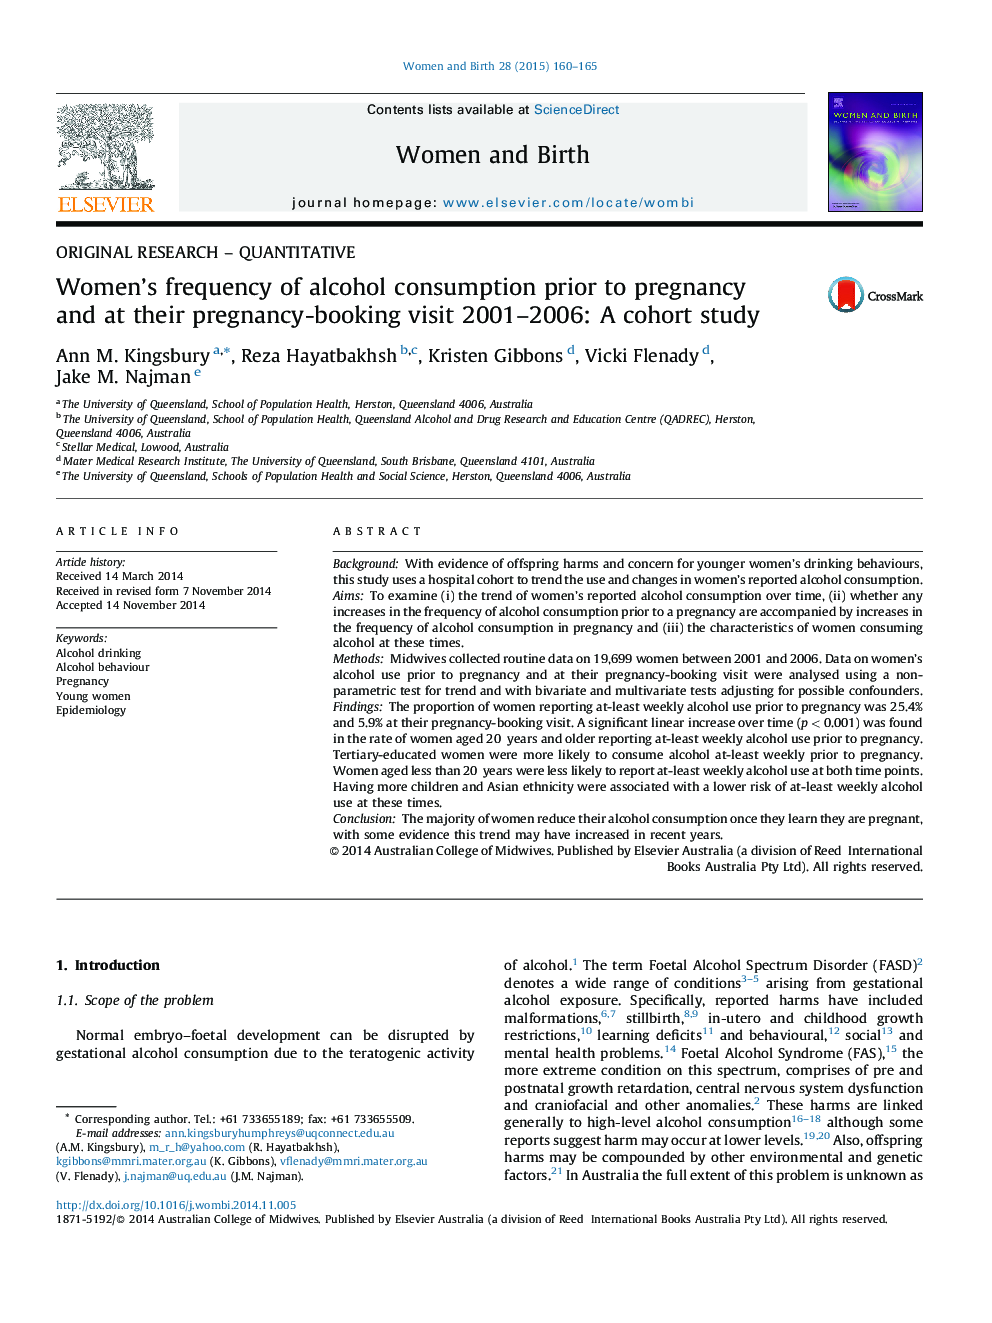 تحقیقات ابتدایی - فراوانی مشارکت زنان در مصرف الکل قبل از بارداری و در هنگام بررسی بارداری آنها 2001-2006: مطالعه کوهورت 